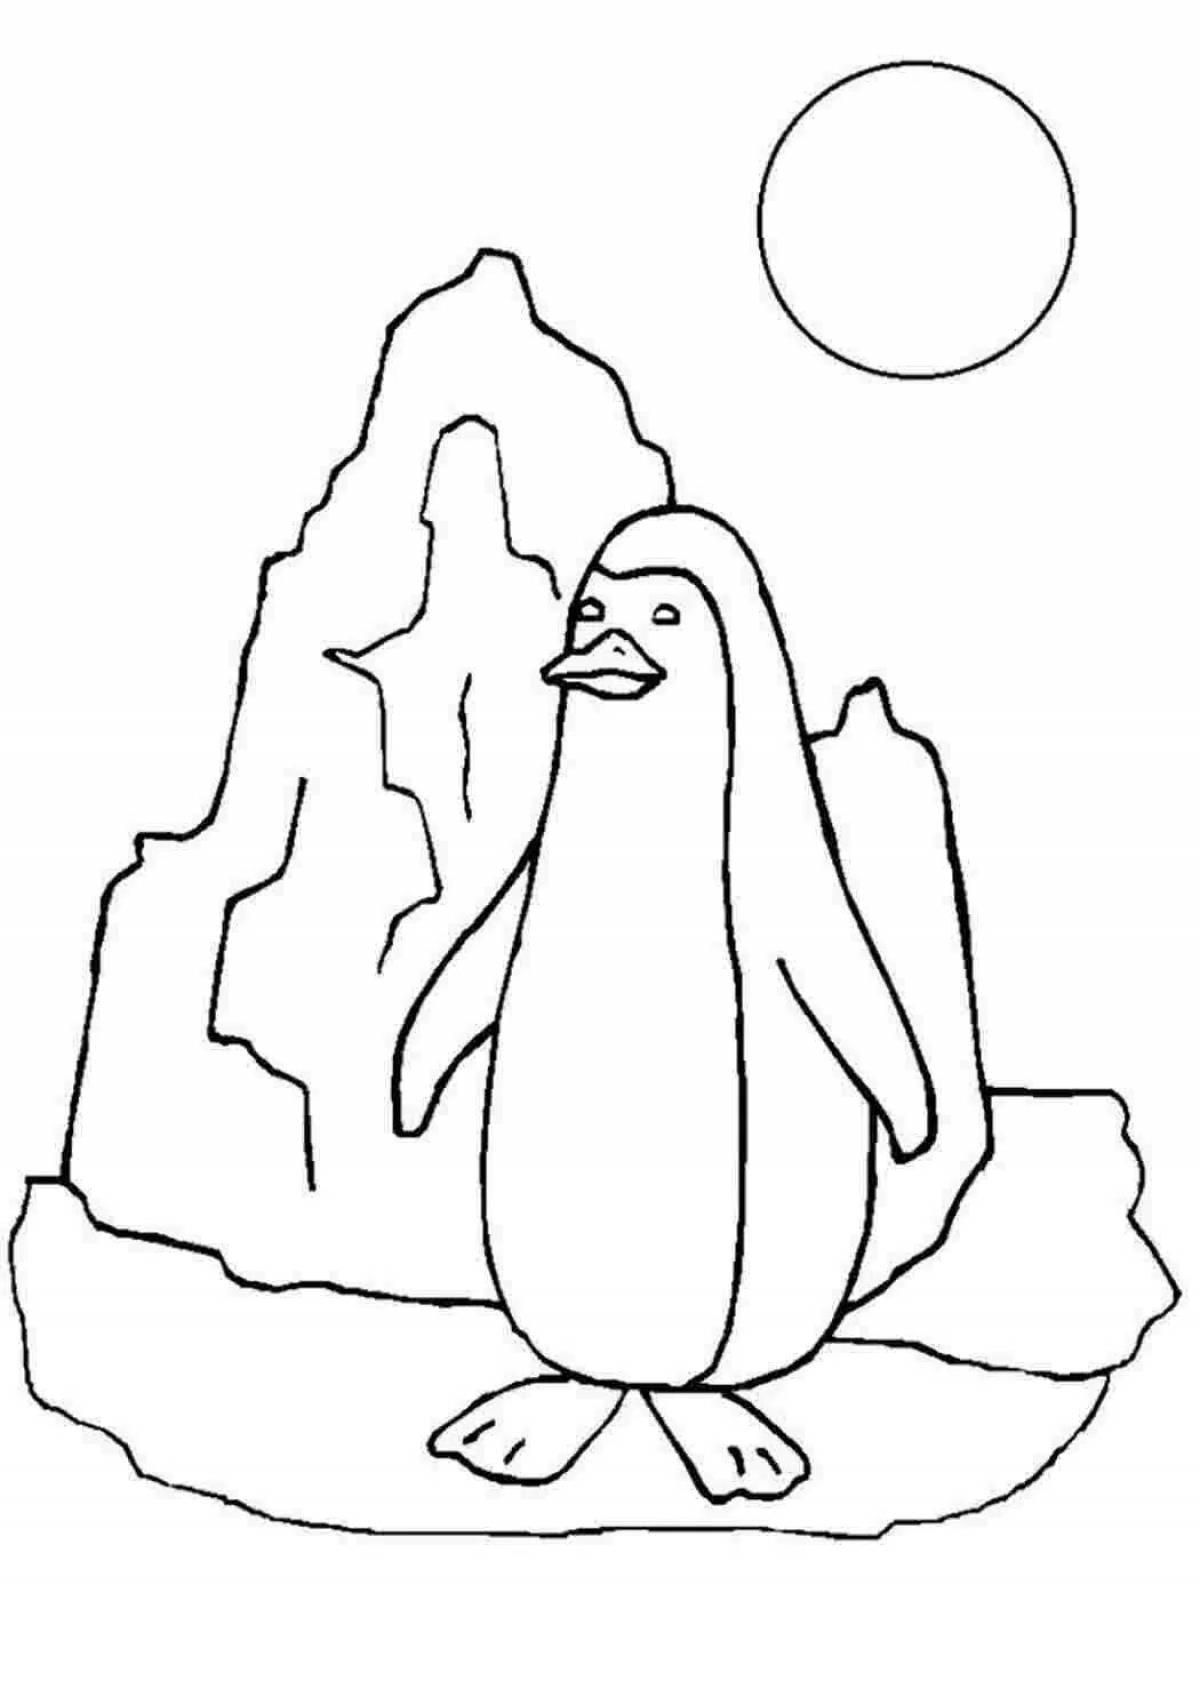 Раскраска jovial antarctica для детей 6-7 лет